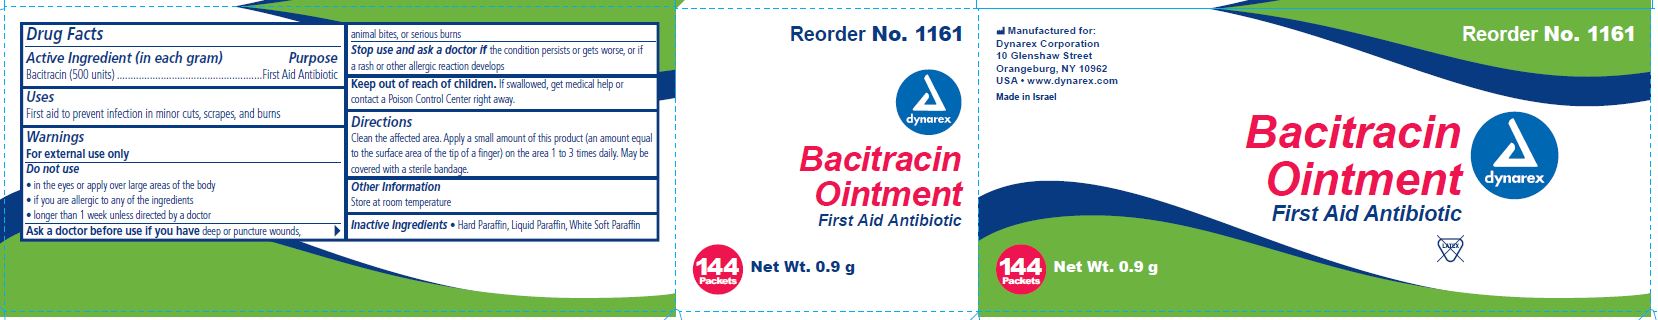 1161 Bacitracin